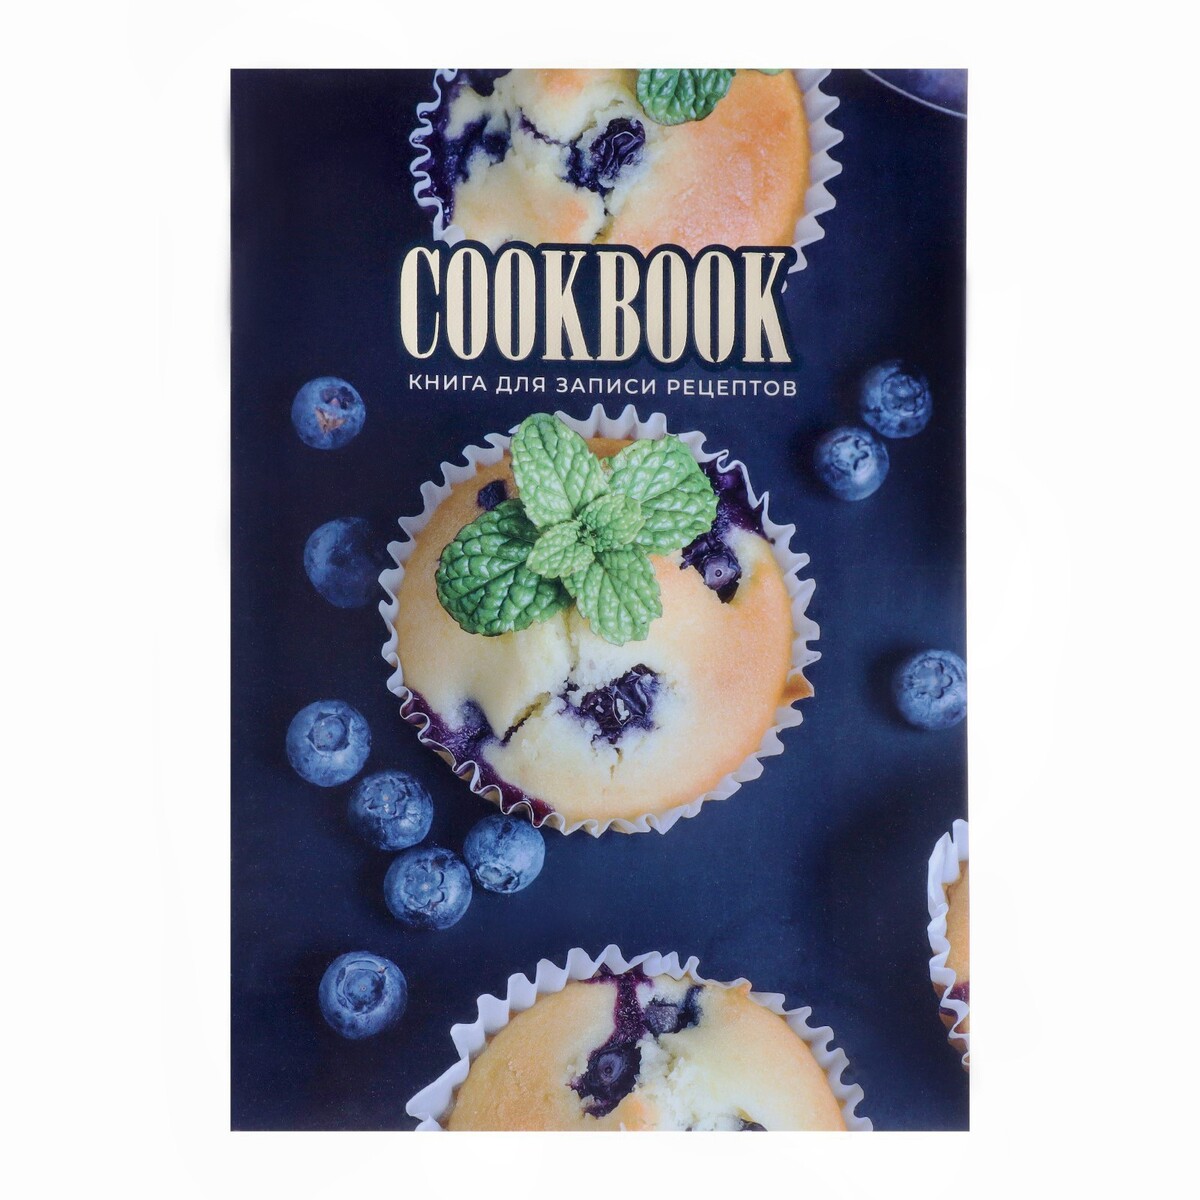 Книга для записи кулинарных рецептов а5, 48 листов